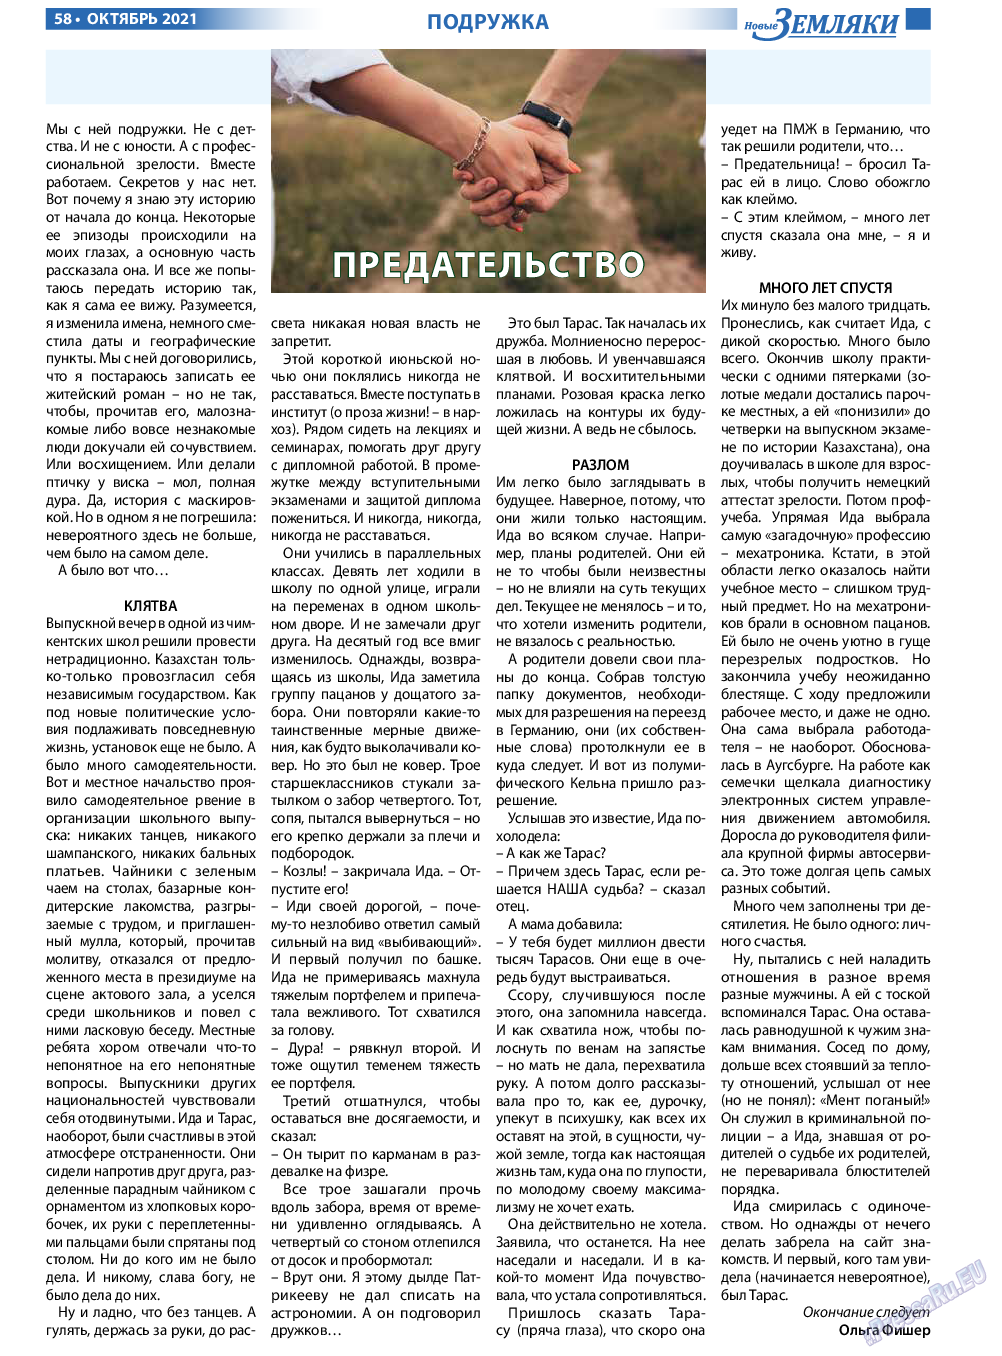 Новые Земляки, газета. 2021 №10 стр.58